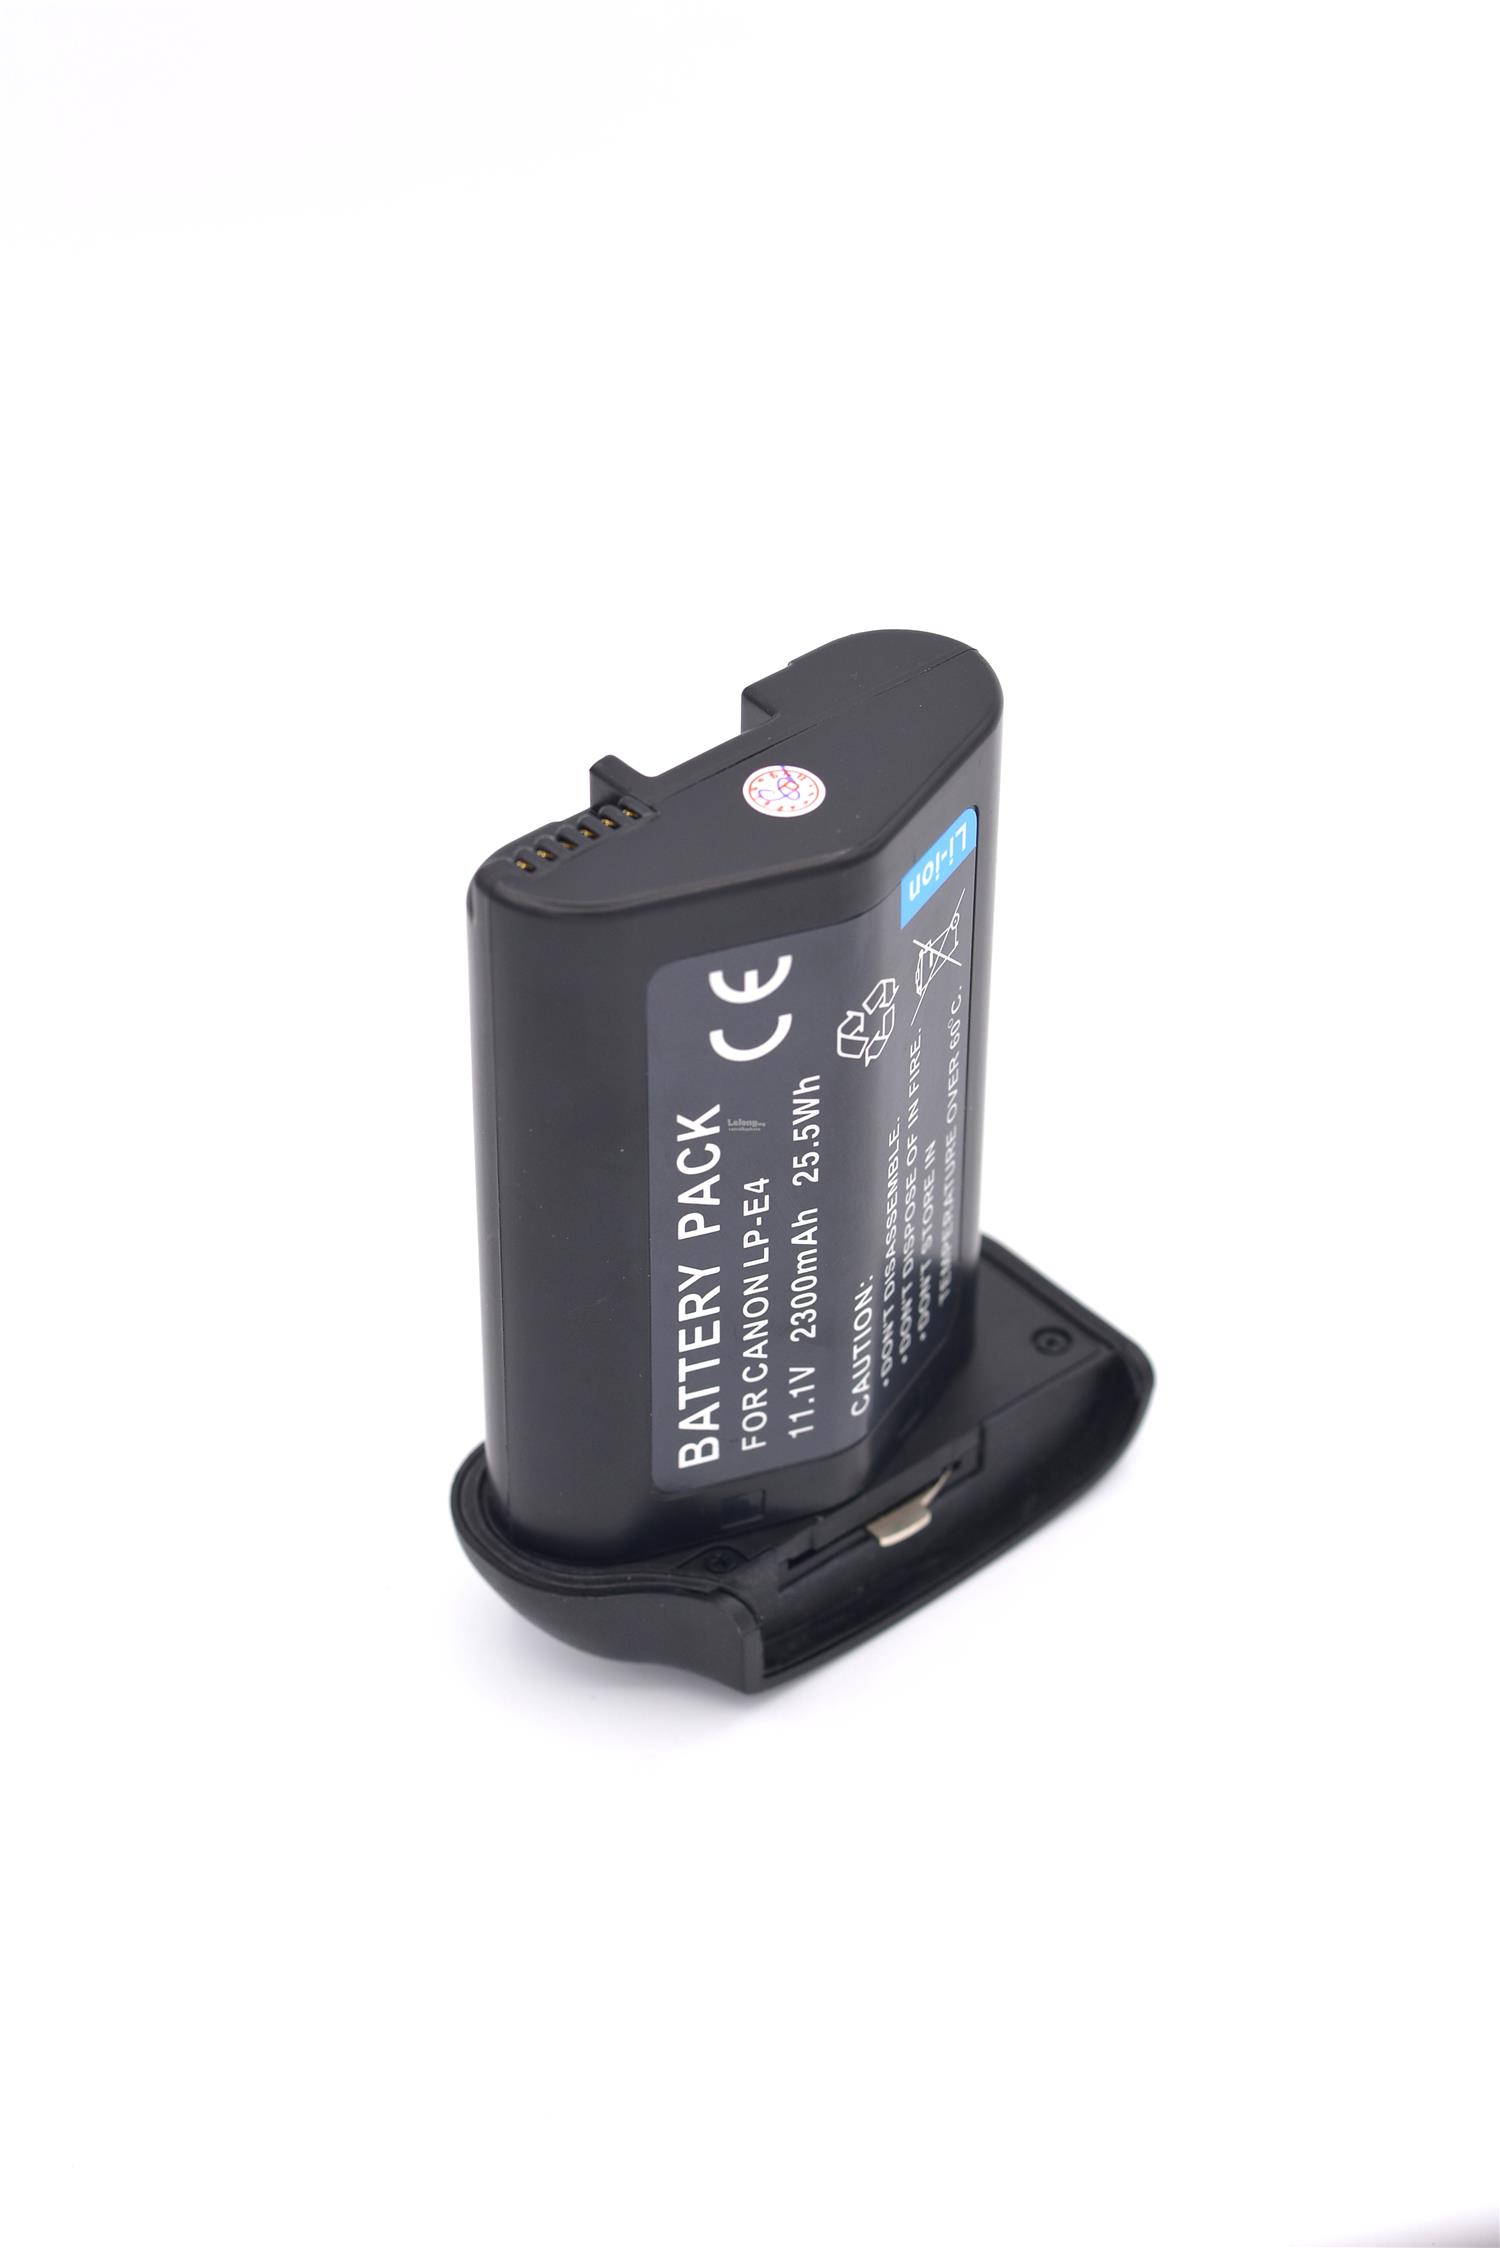 Viloso LP-E4 Battery For Canon EOS 1Ds Mark III IV 1DX 1Ds3 1D3 1D4